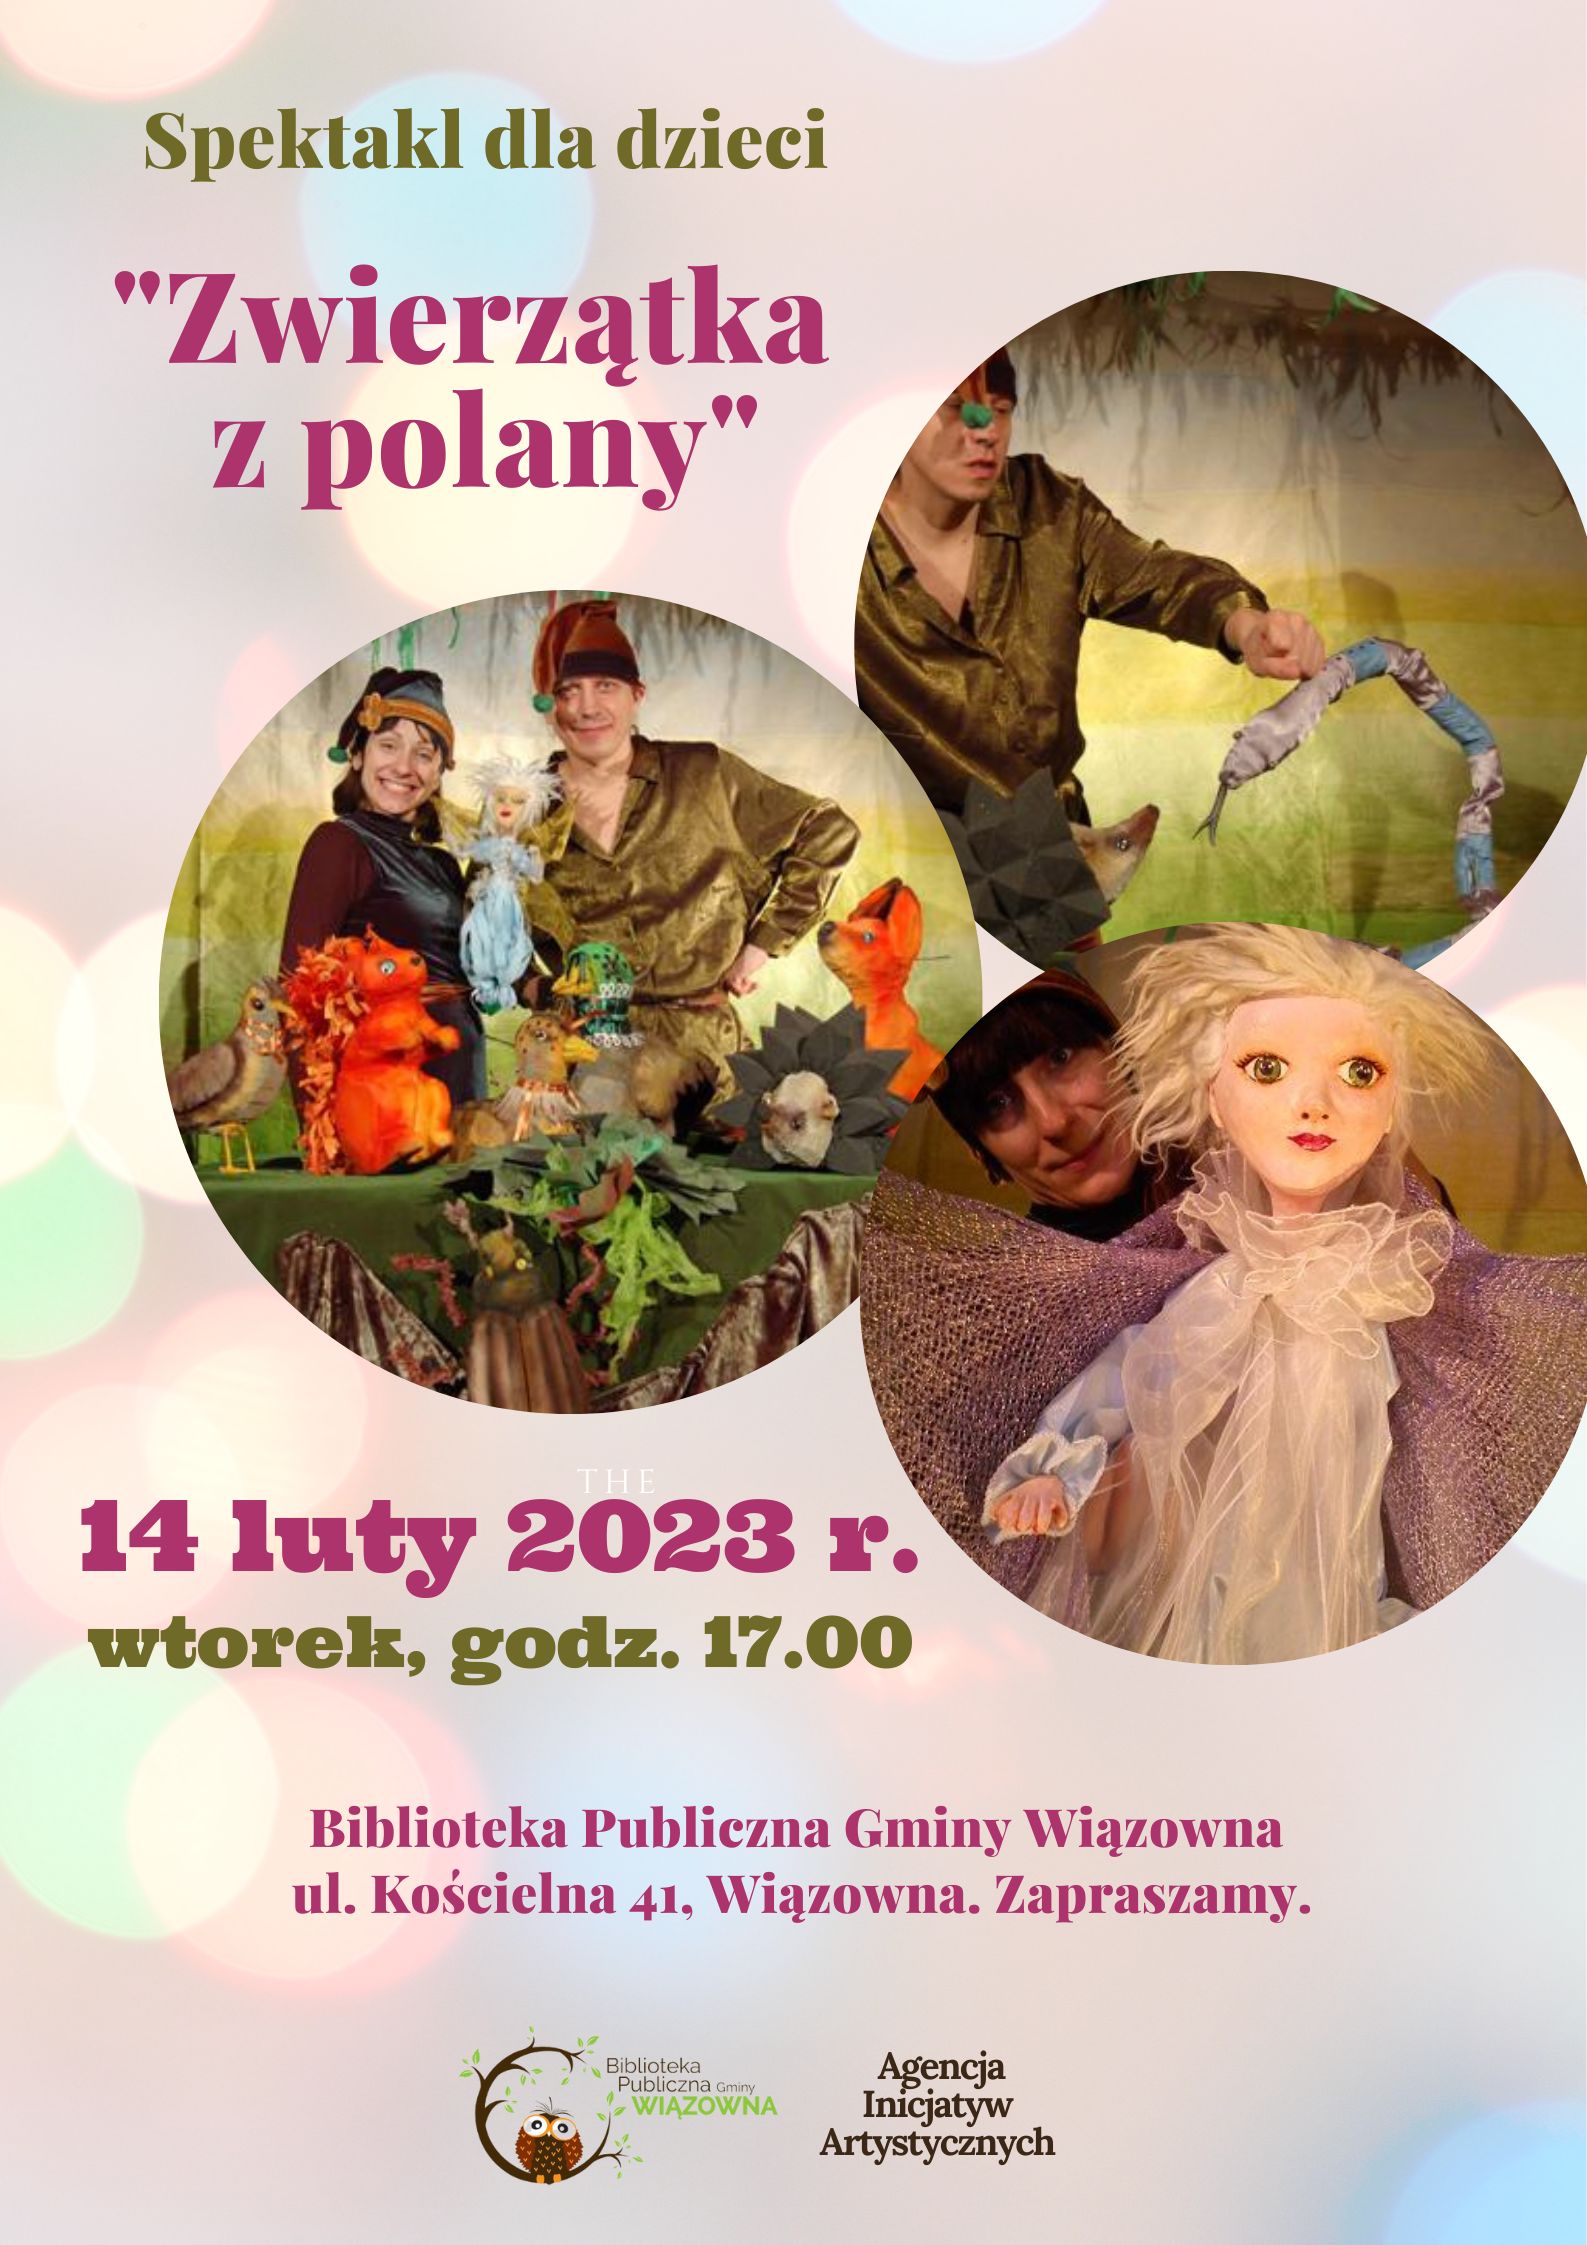 Spektakl dla dzieci "Zwierzęta z polany" 14 lutego o godz. 17.00 w bibliotece w Wiązownie.